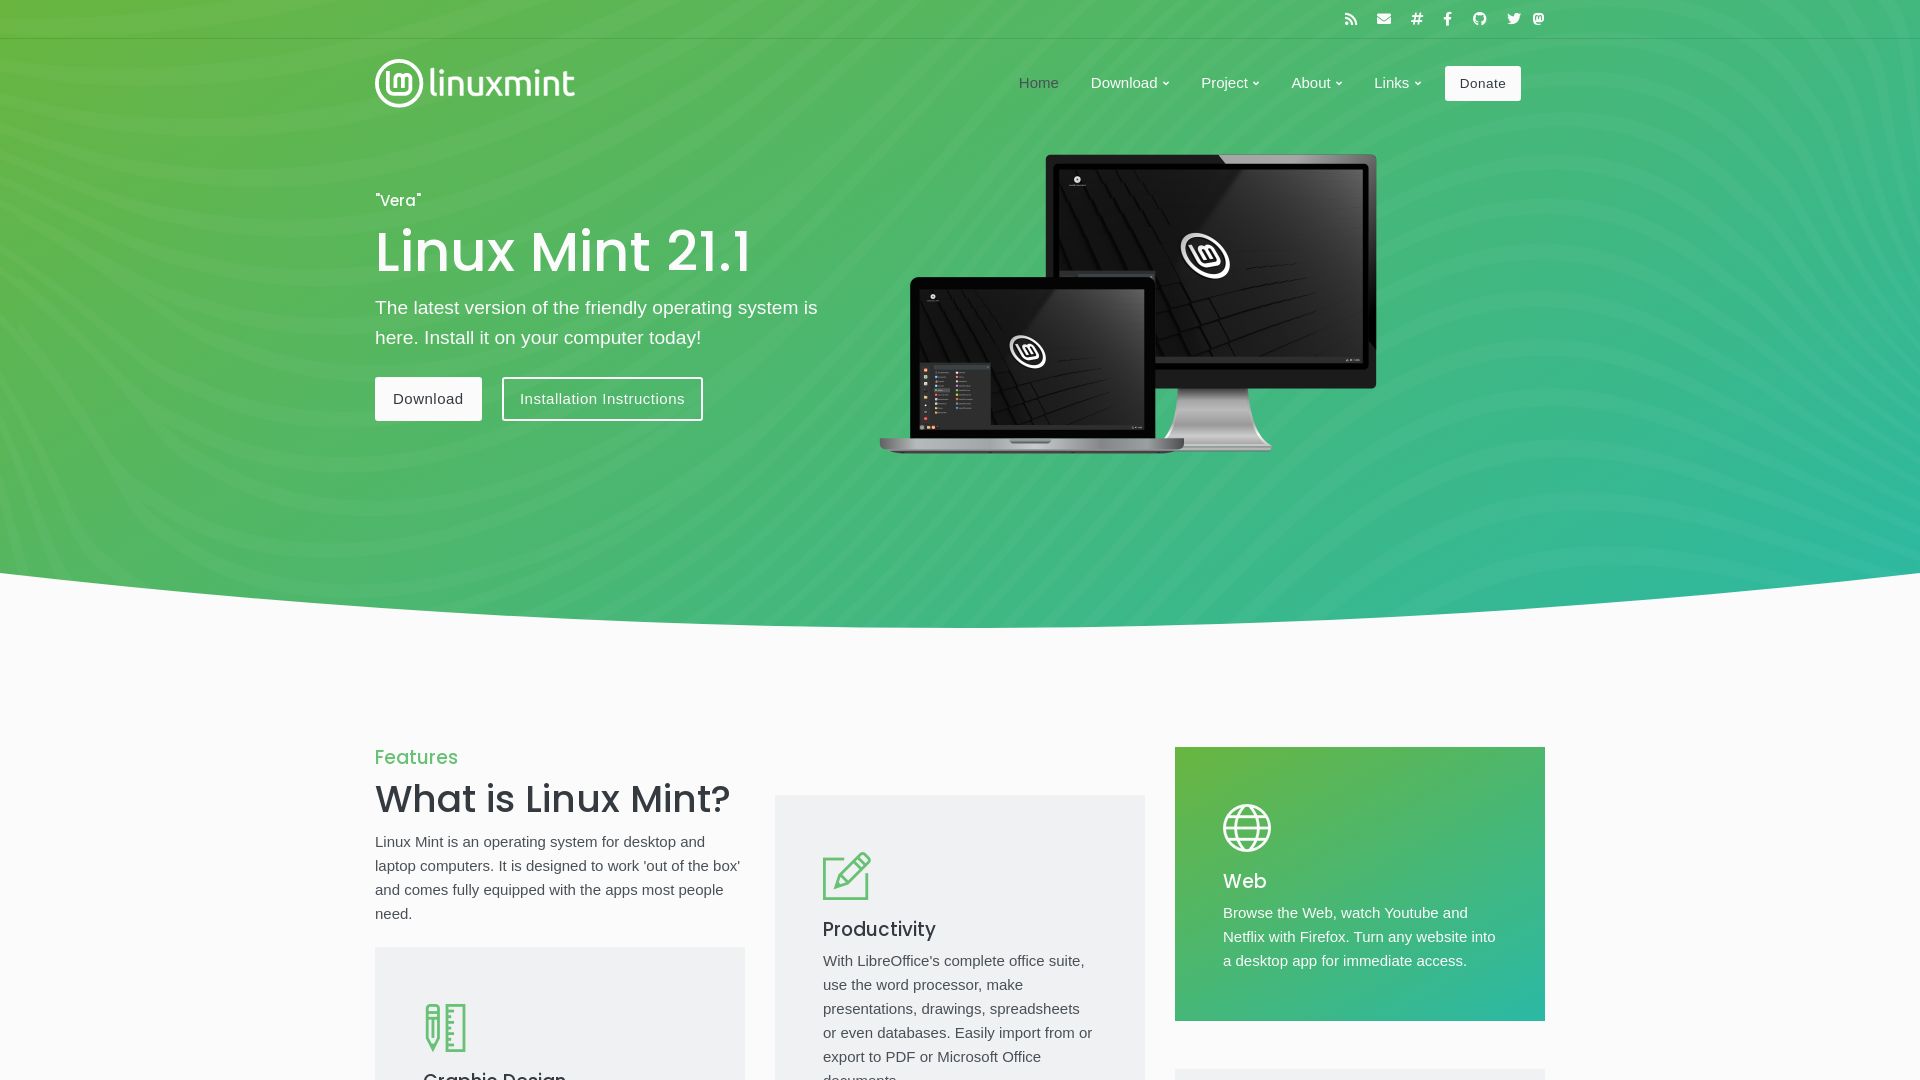 État du site web linuxmint.com est   EN LIGNE